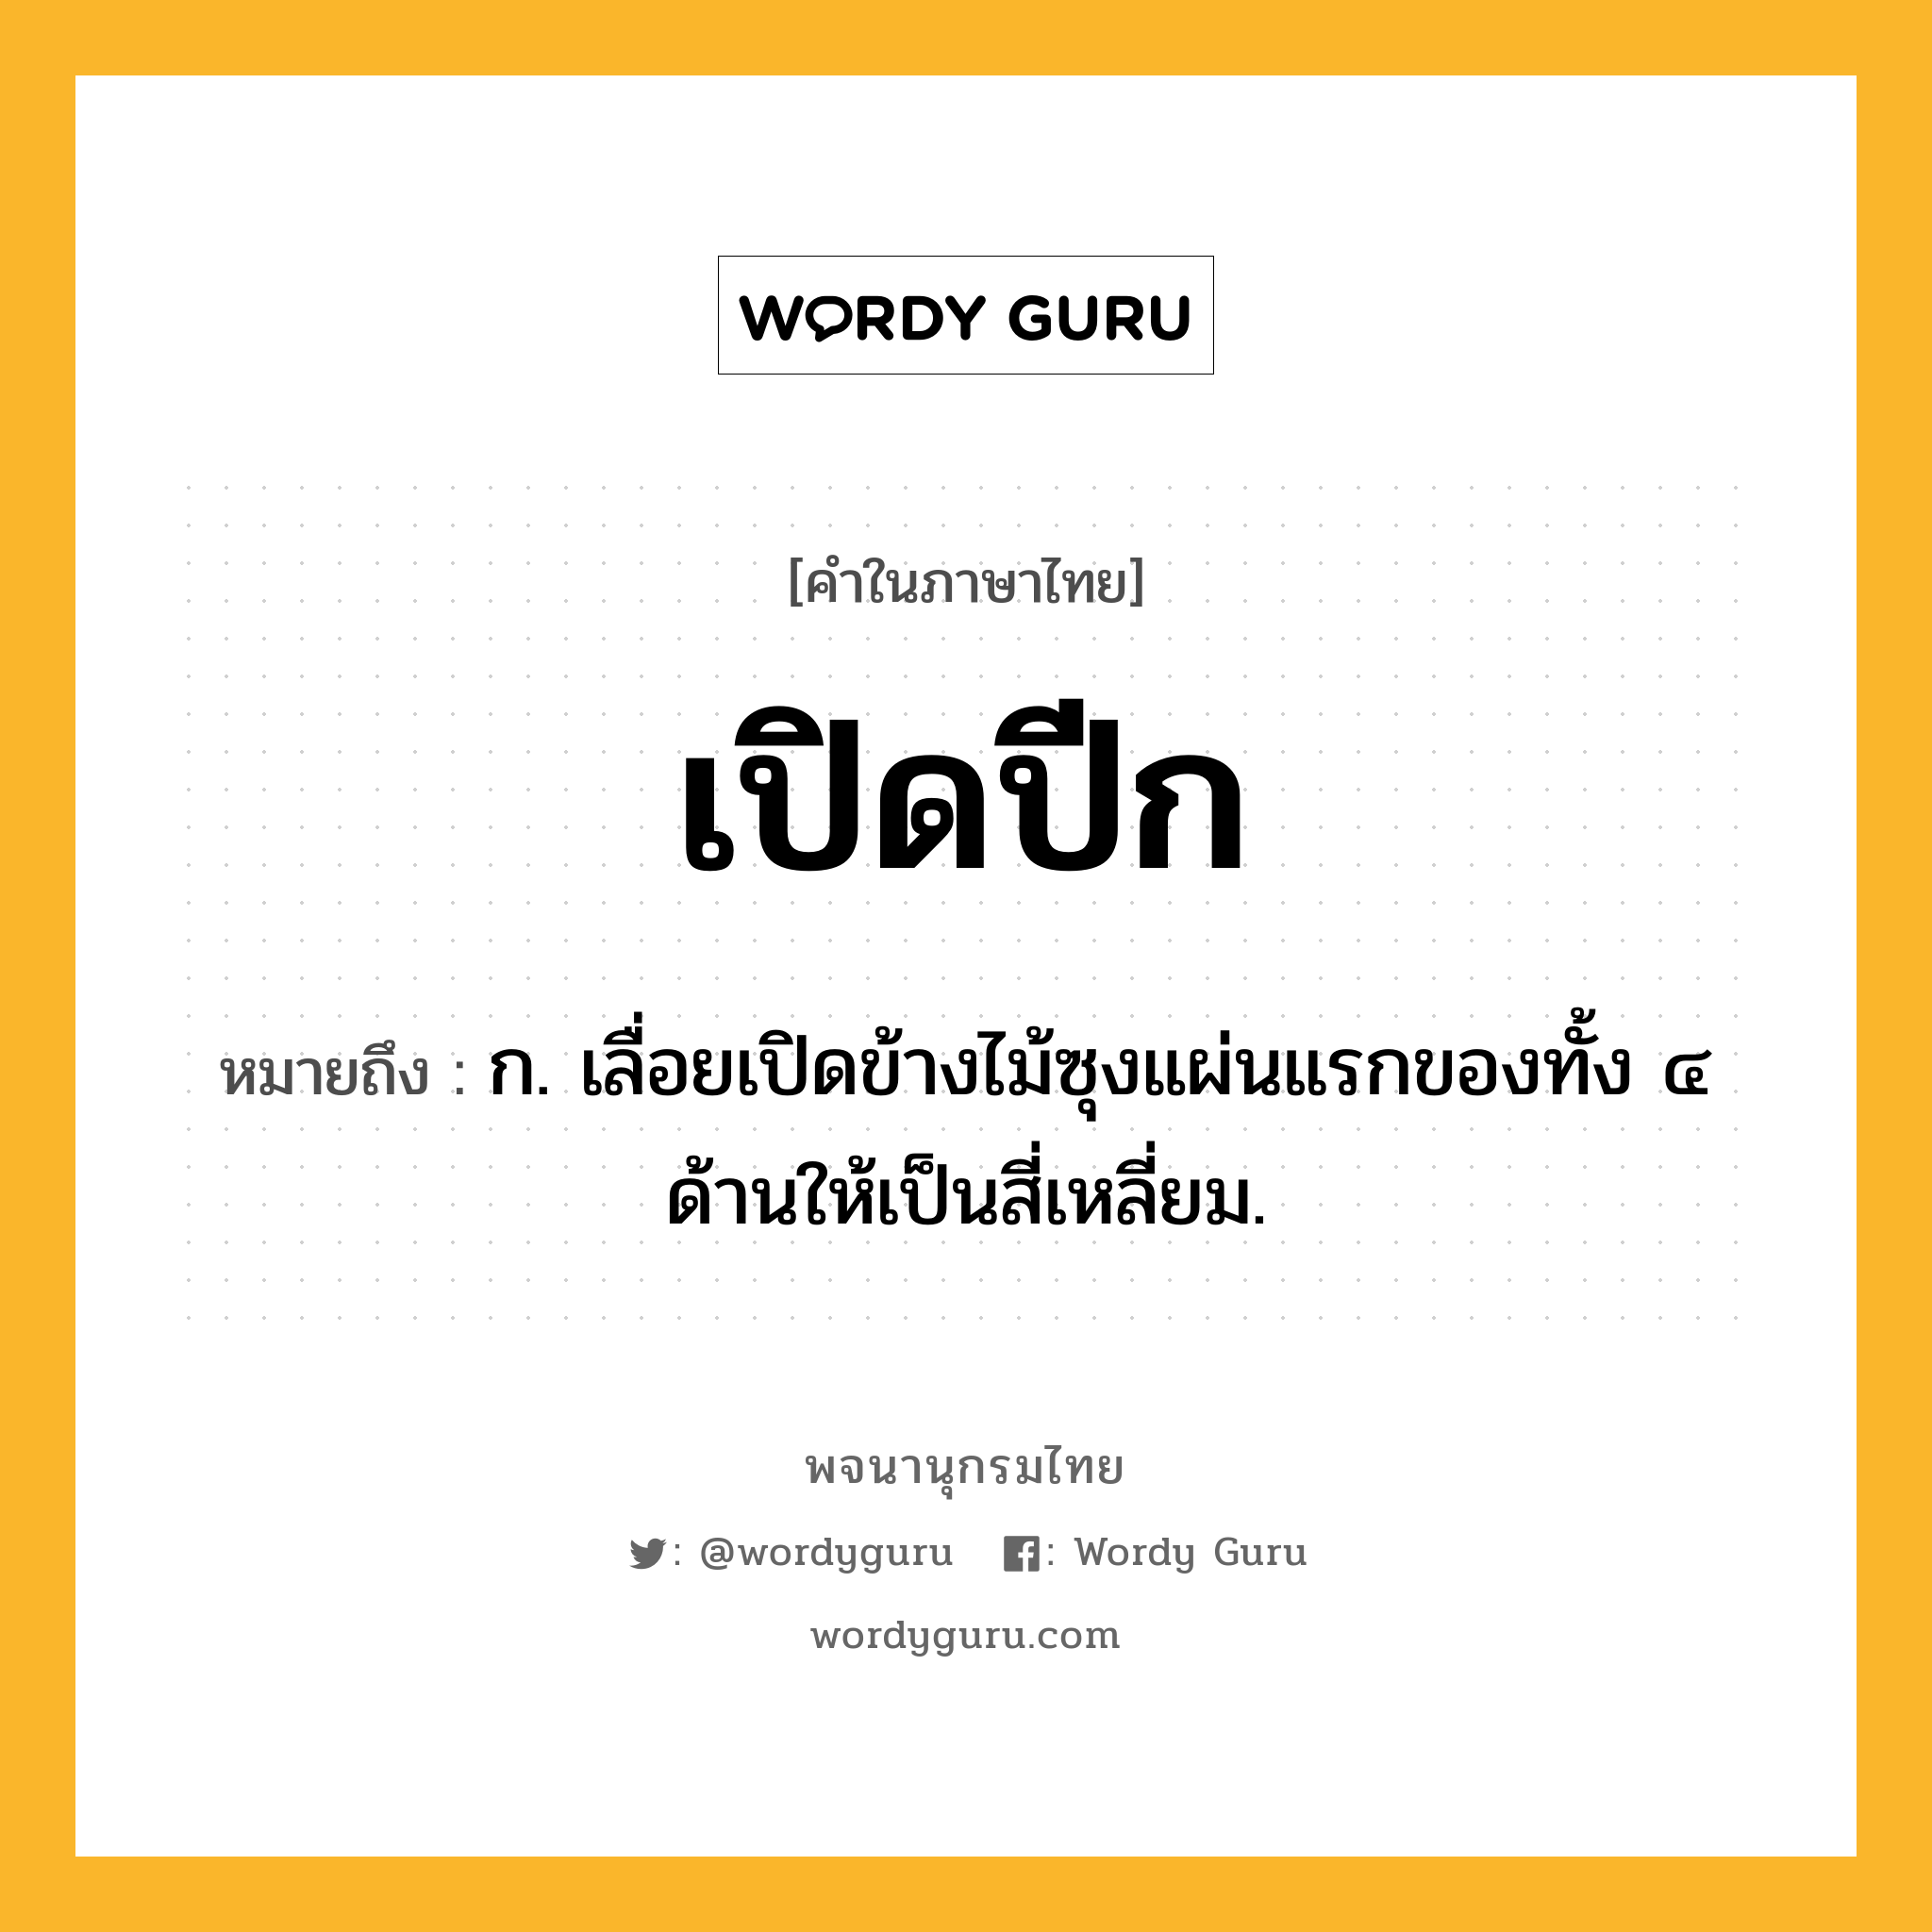 เปิดปีก ความหมาย หมายถึงอะไร?, คำในภาษาไทย เปิดปีก หมายถึง ก. เลื่อยเปิดข้างไม้ซุงแผ่นแรกของทั้ง ๔ ด้านให้เป็นสี่เหลี่ยม.